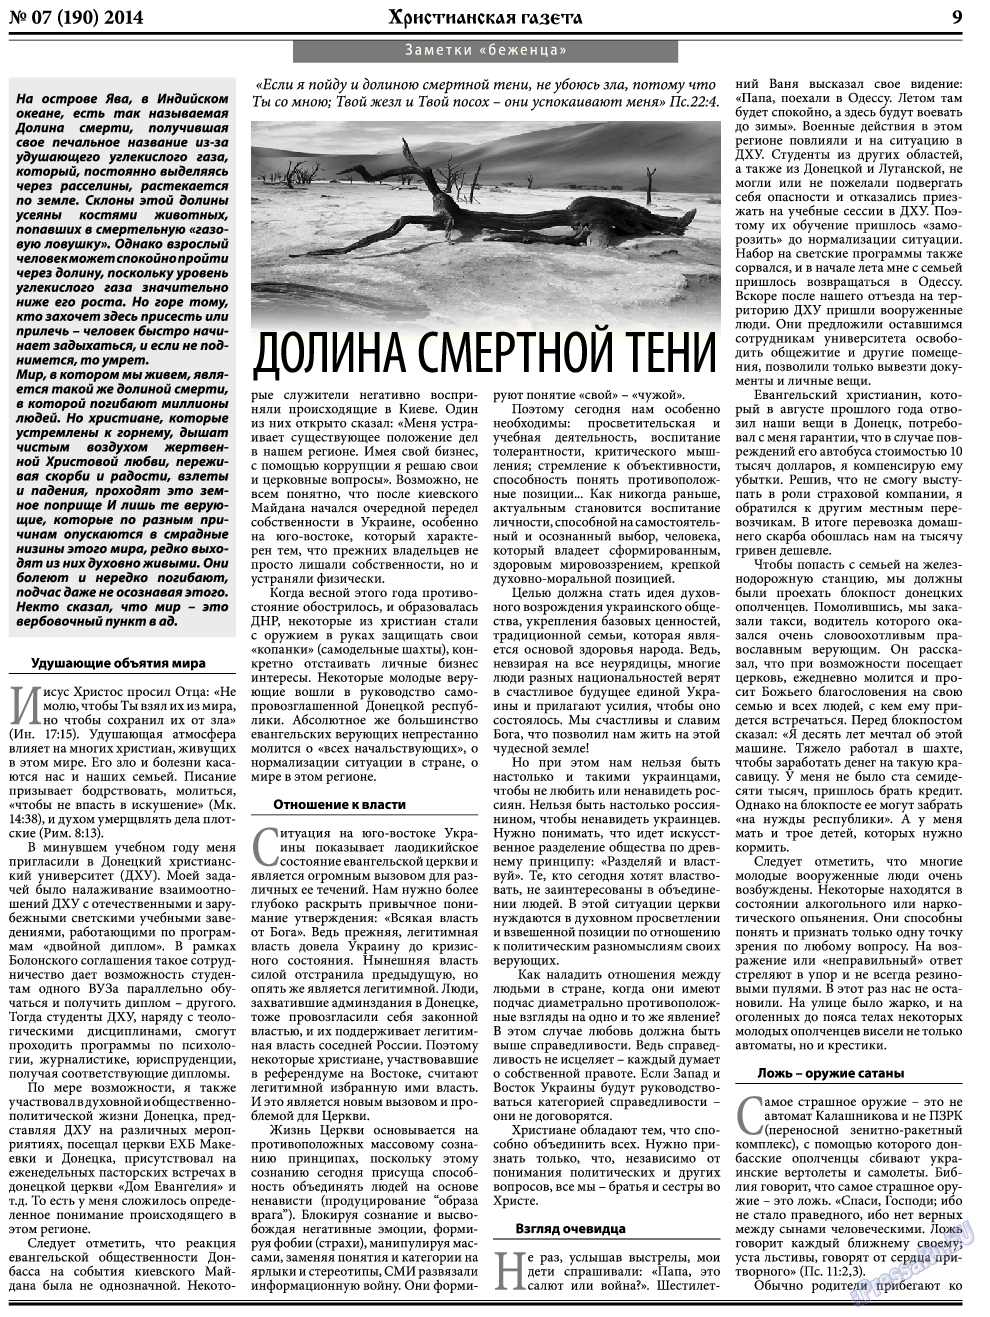 Христианская газета, газета. 2014 №7 стр.9